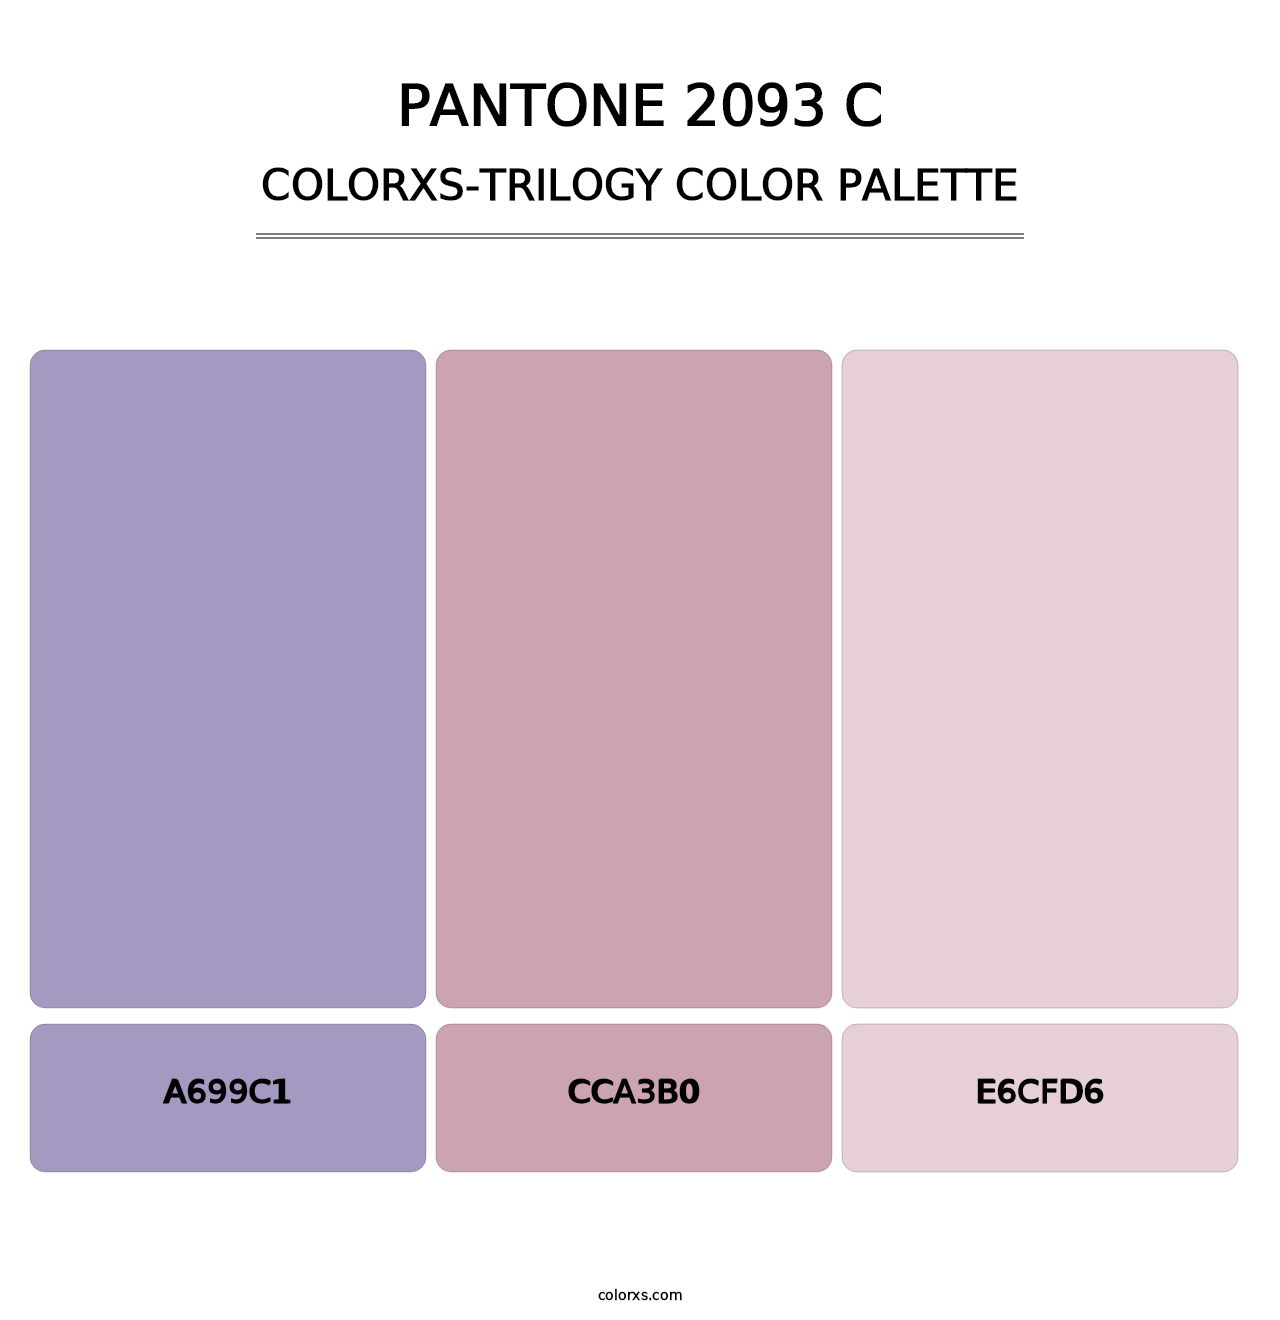 PANTONE 2093 C - Colorxs Trilogy Palette